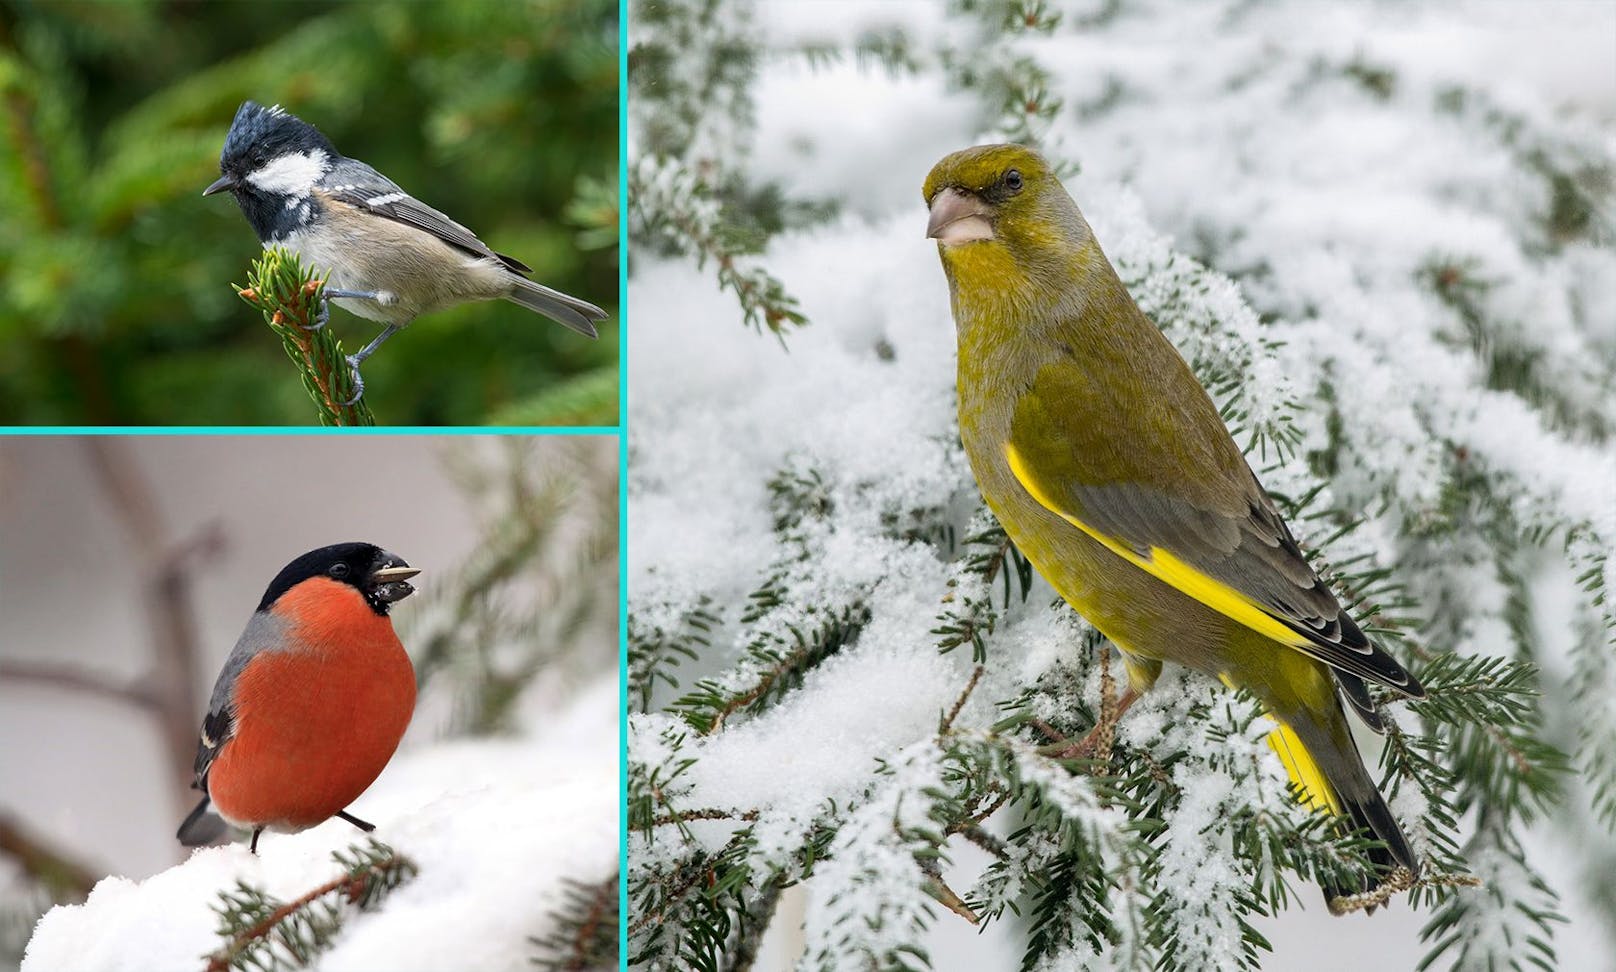 Vom 06. bis 08. Jänner lädt die Vogelschutzorganisation "BirdLife" zur "Stunde der Wintervögel" und alle machen mit!